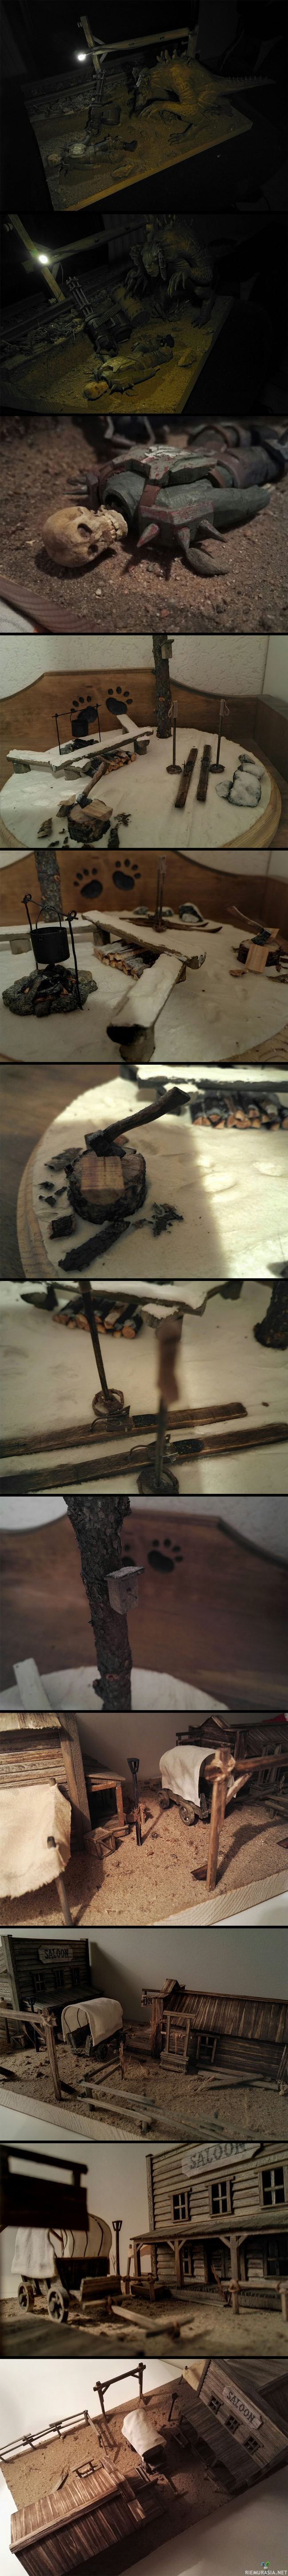 Omakehuviikon dioramat - Kolme joululahjaksi tekemääni dioramaa. Fallout 4 teemainen, 40x35cm. Talvimaisema 25cm. Villilänsi n. 40x20cm. Kaikki osat itsetehtyjä, laudan pätkistä, liimalevyistä, ynnä muista satunnaisista puunpalasista.